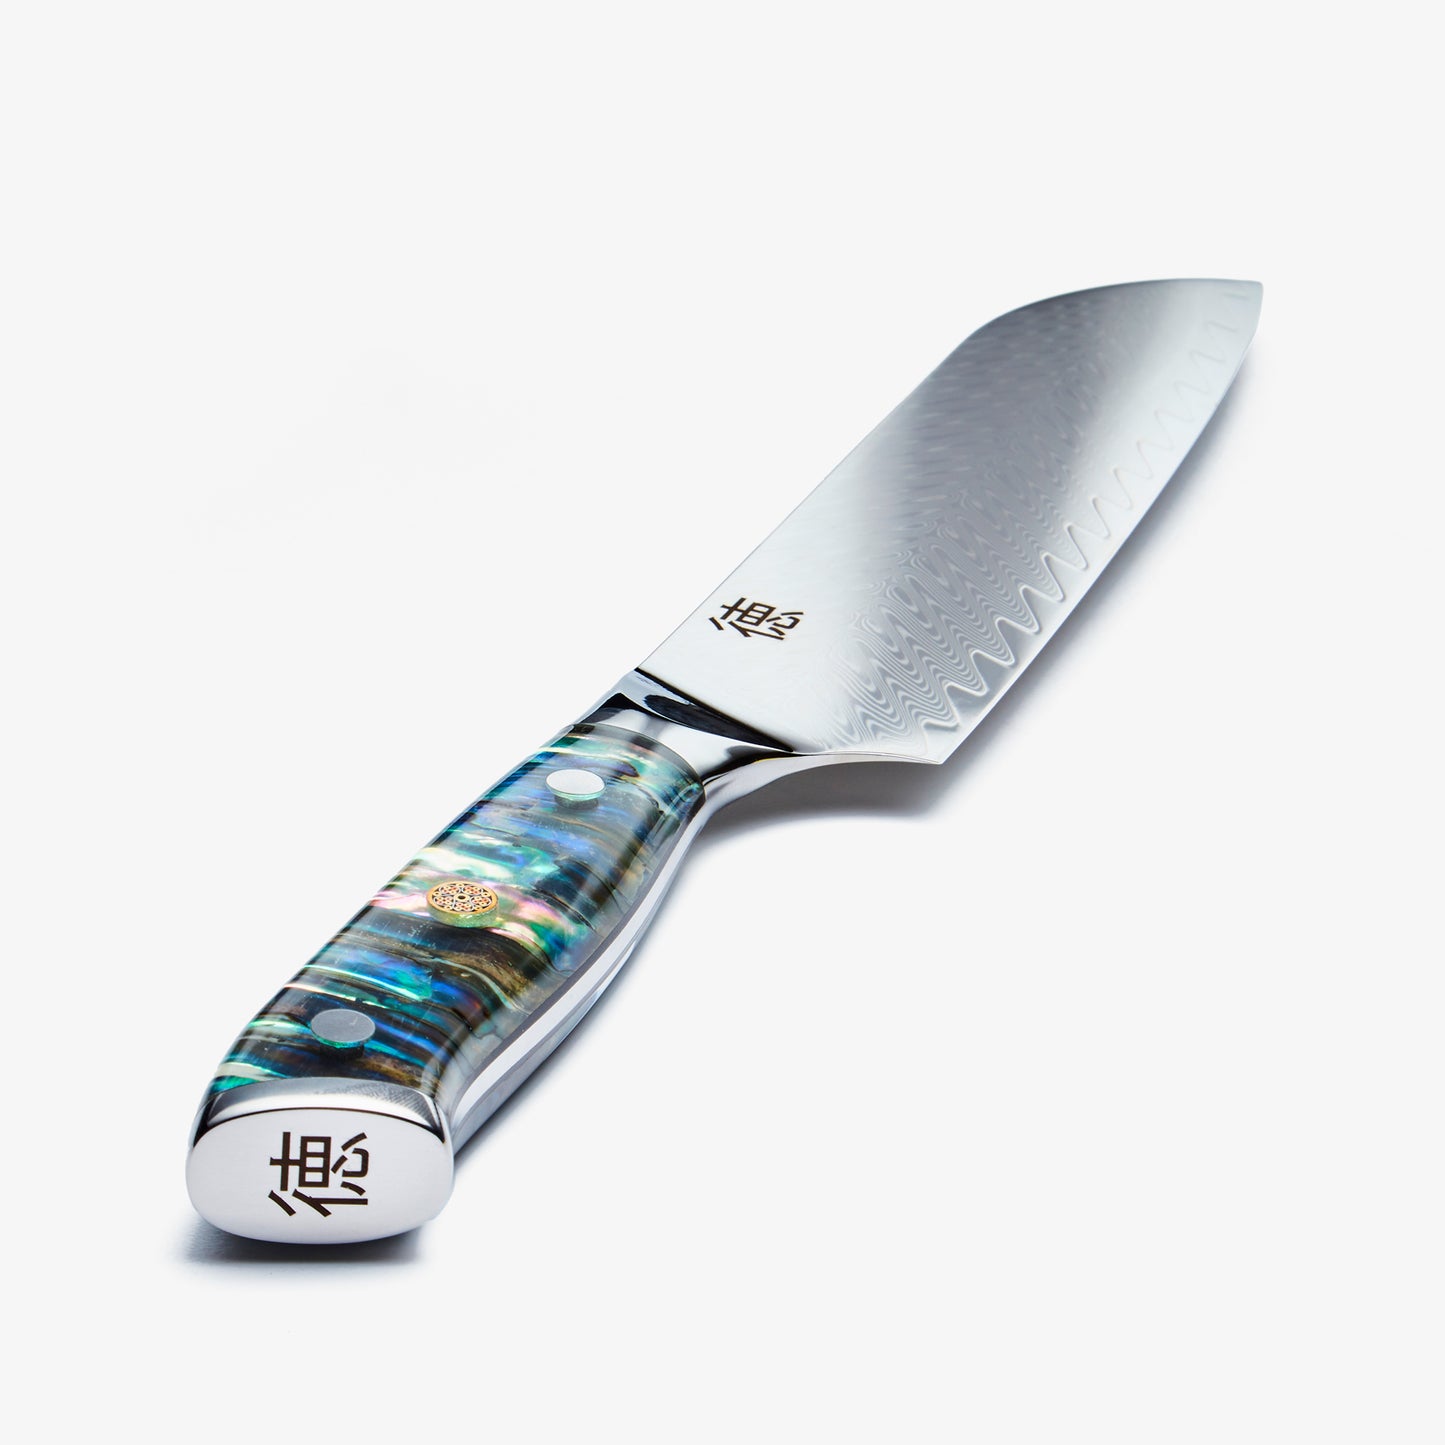 Чикаши (ちかし) 7 -дюймовый нож Сантоку